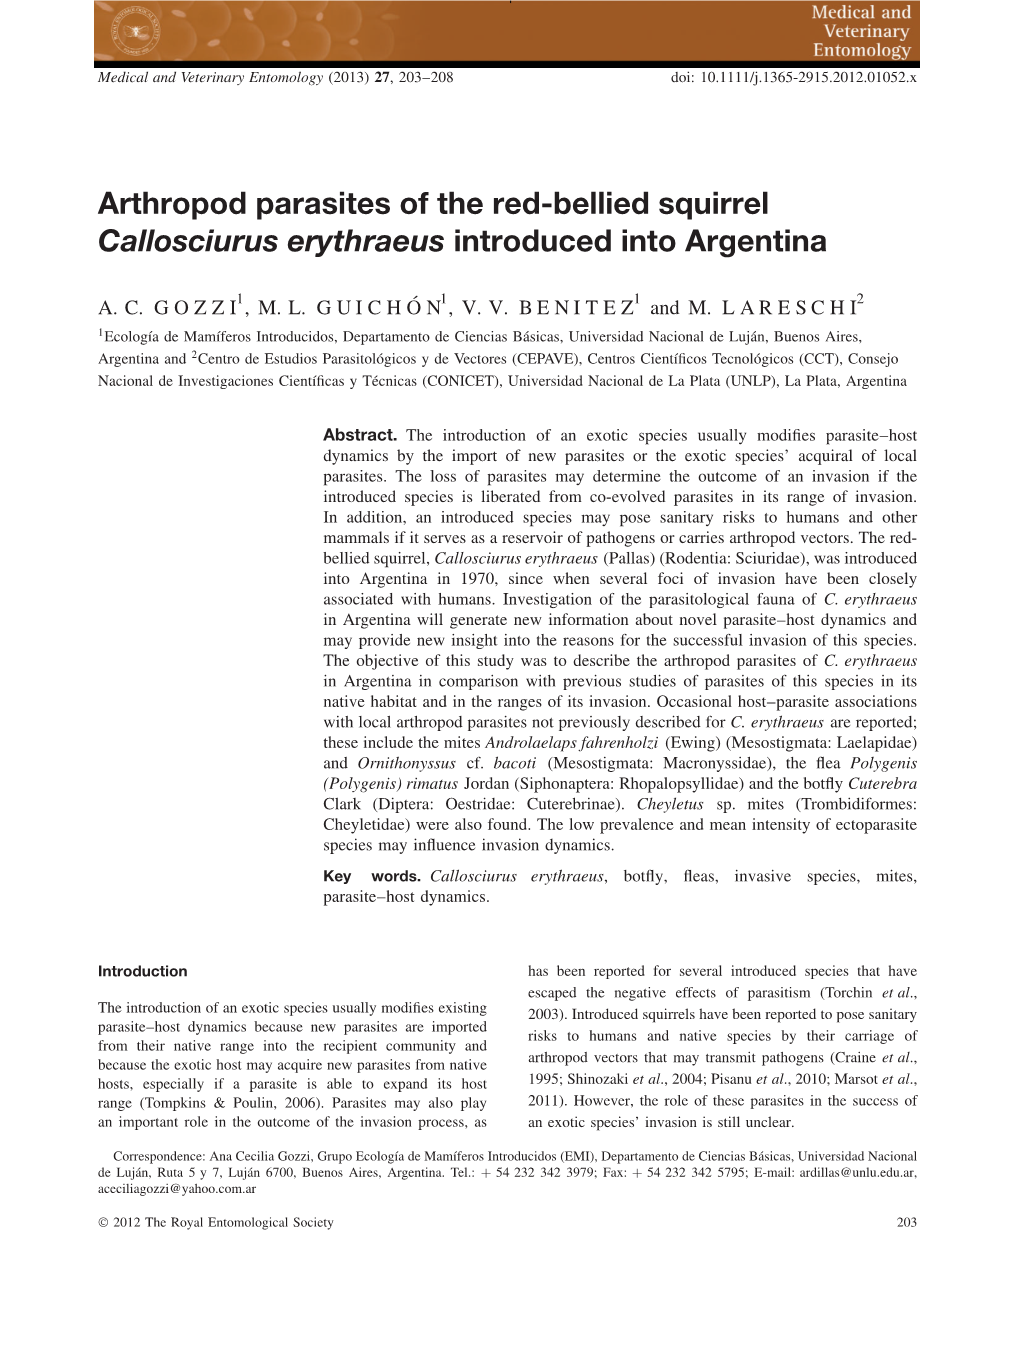 Arthropod Parasites of the Red-Bellied Squirrel Callosciurus Erythraeus Introduced Into Argentina